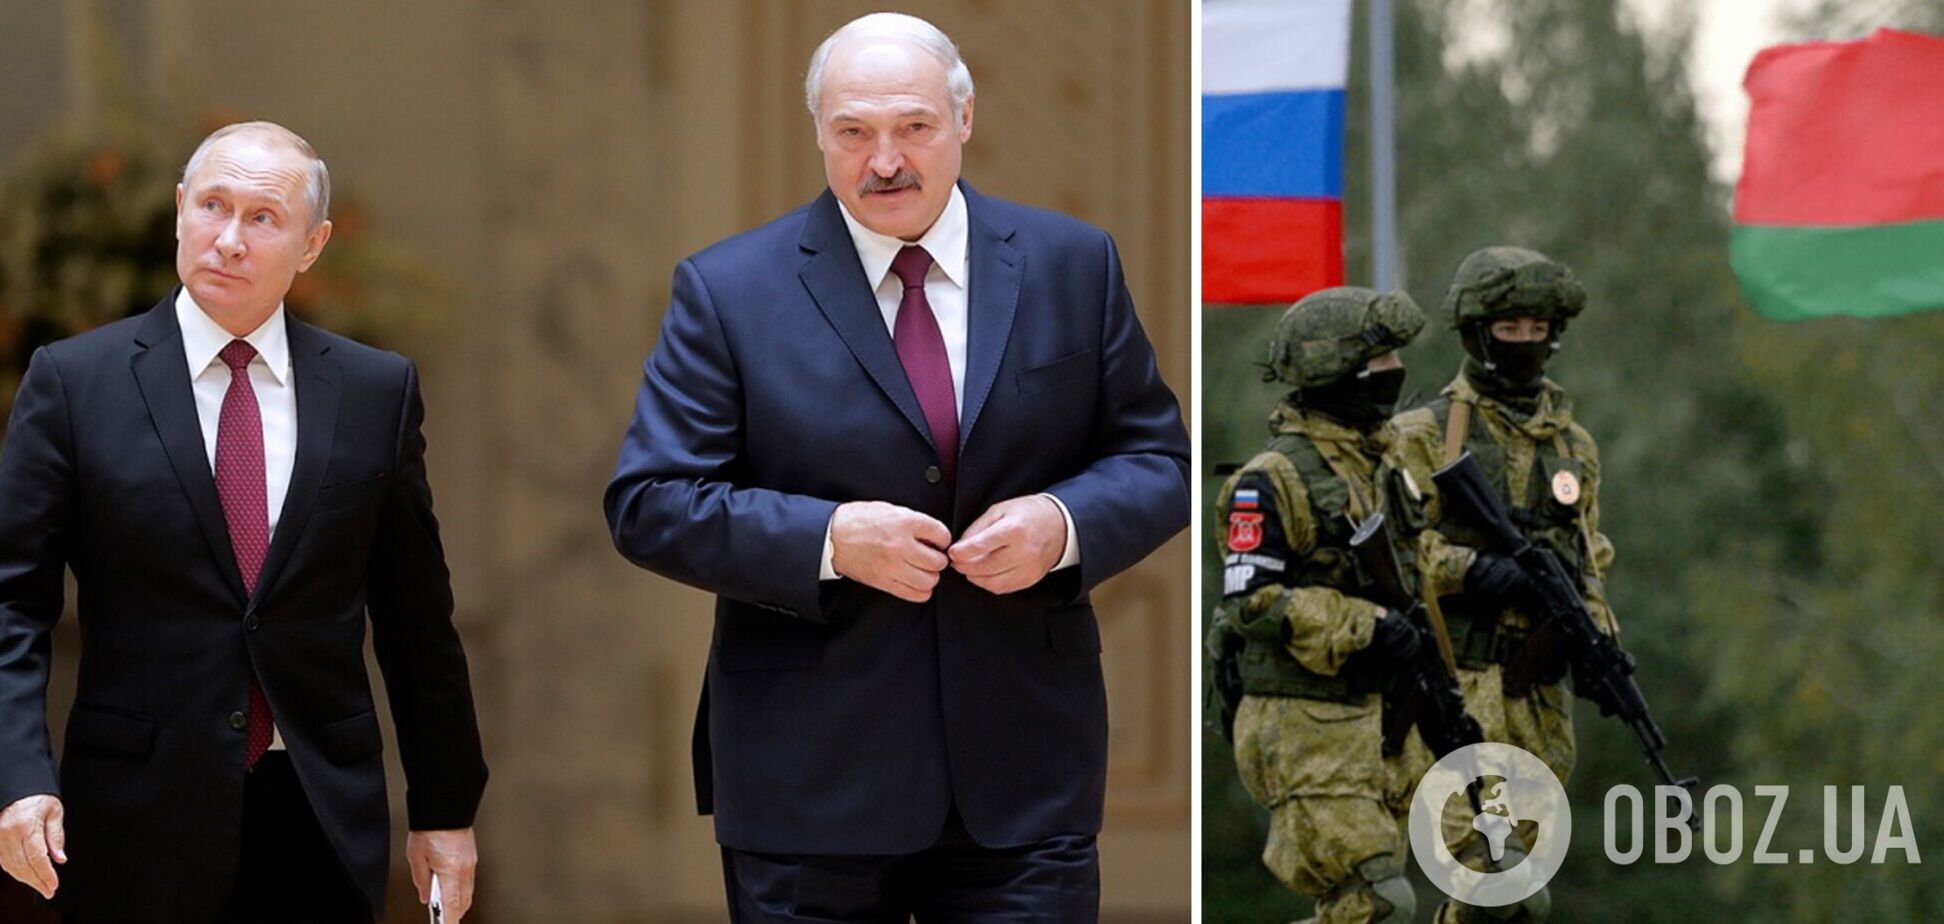 В Беларуси все готово к мобилизации, Лукашенко осталось приказать: оппозиционер предупредил об угрозе